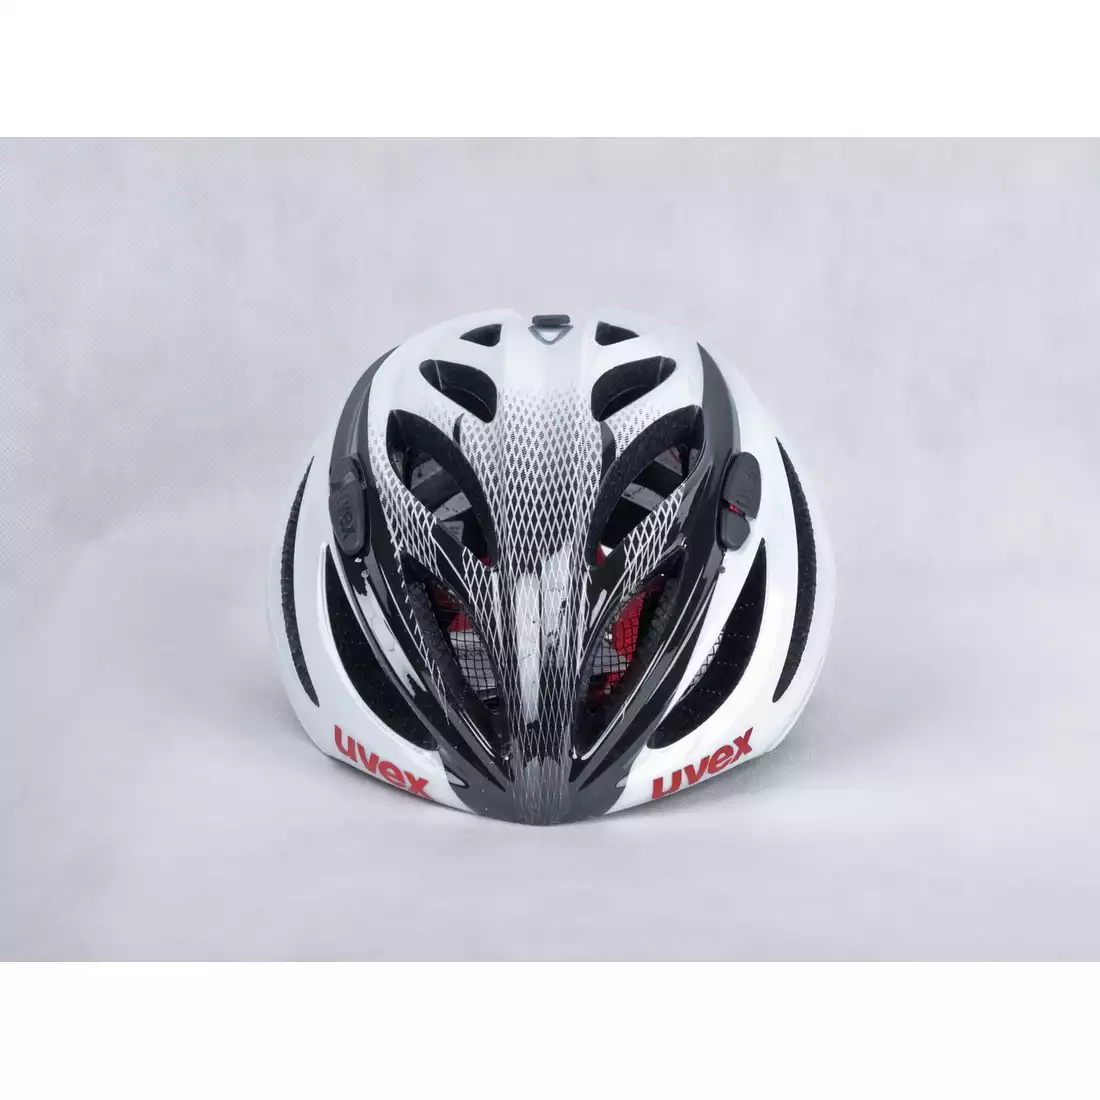 UVEX BOSS RACE kask rowerowy 41022908 biało-czarny